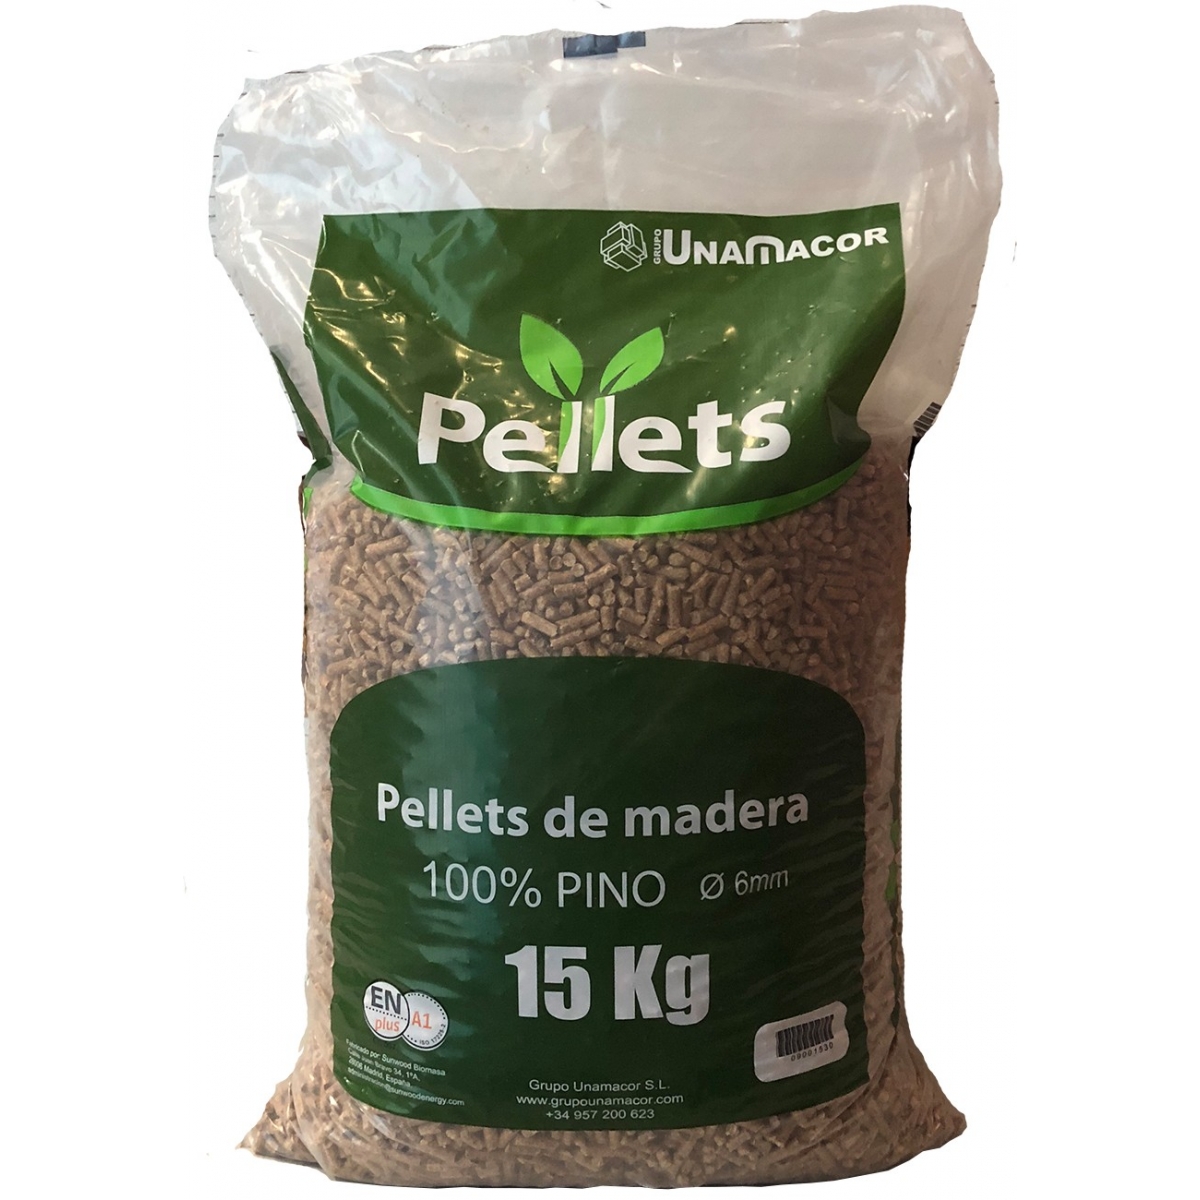 Palete de pellets 15kg 70 sacos Grupo Unamacor